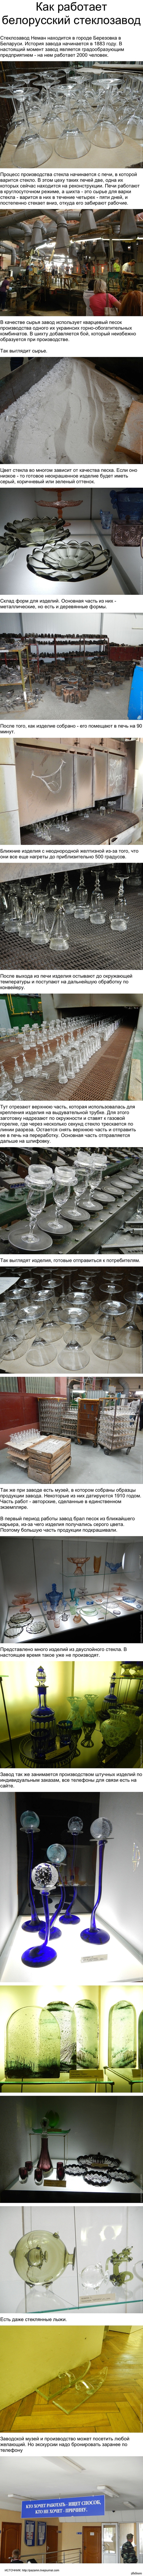 Как работает белорусский стеклозавод 